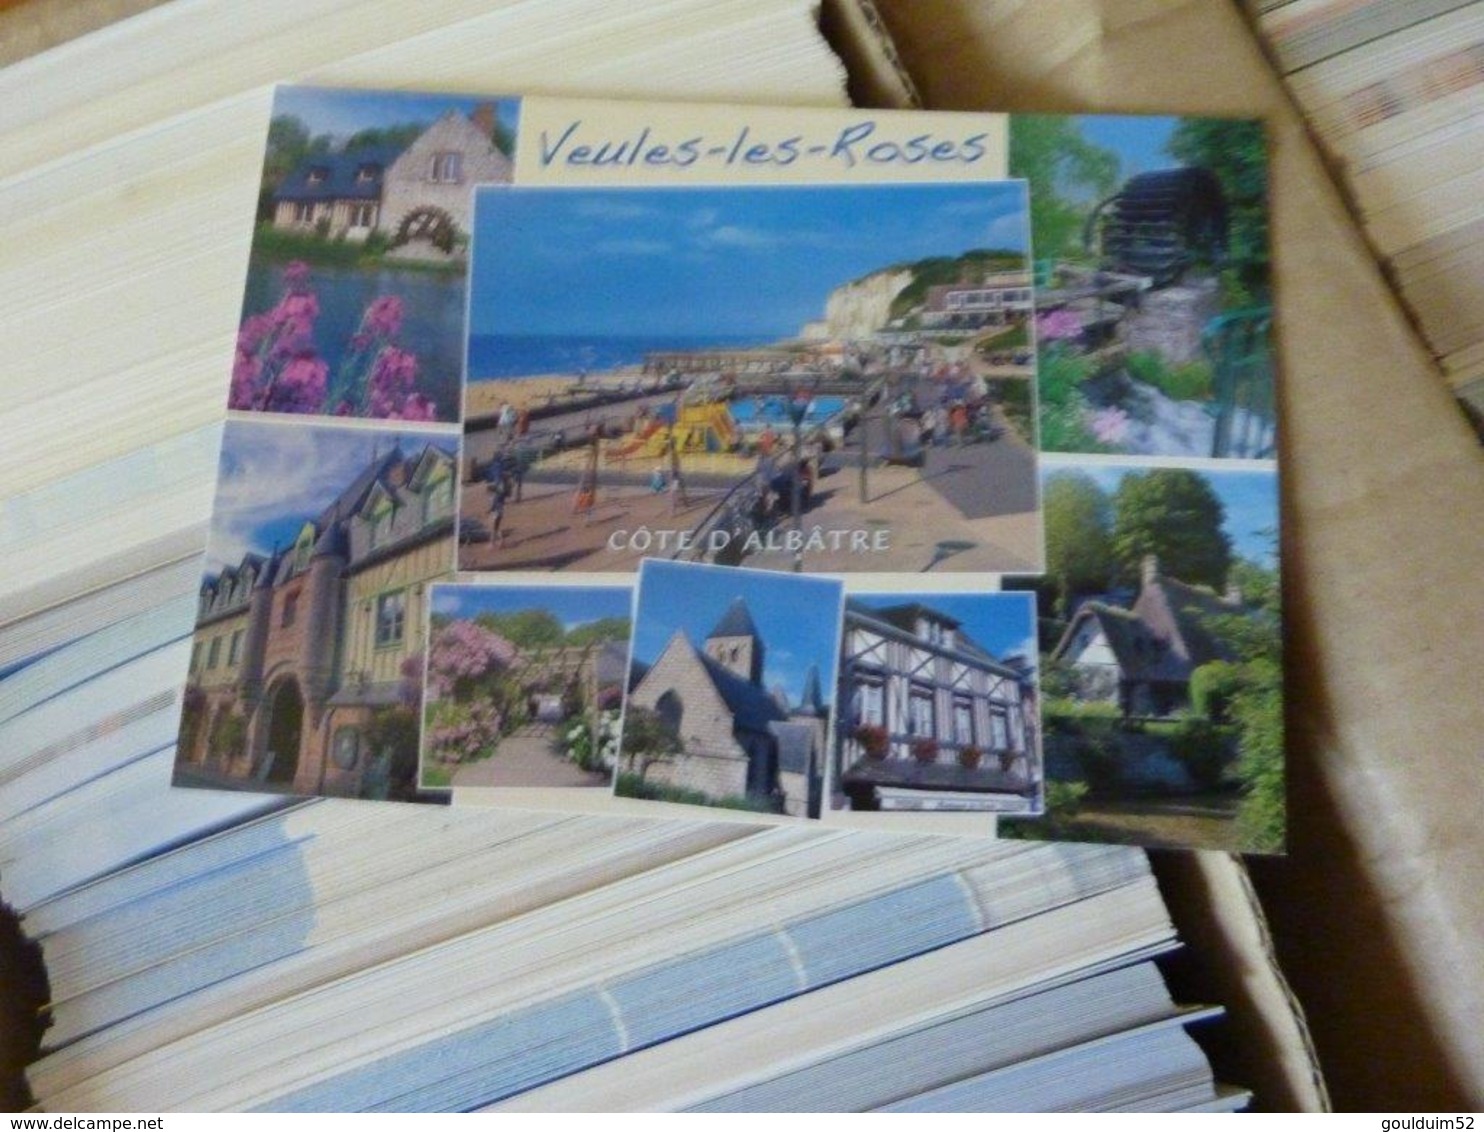 Lot de 1640 cartes postales modernes neuves sur la normandie